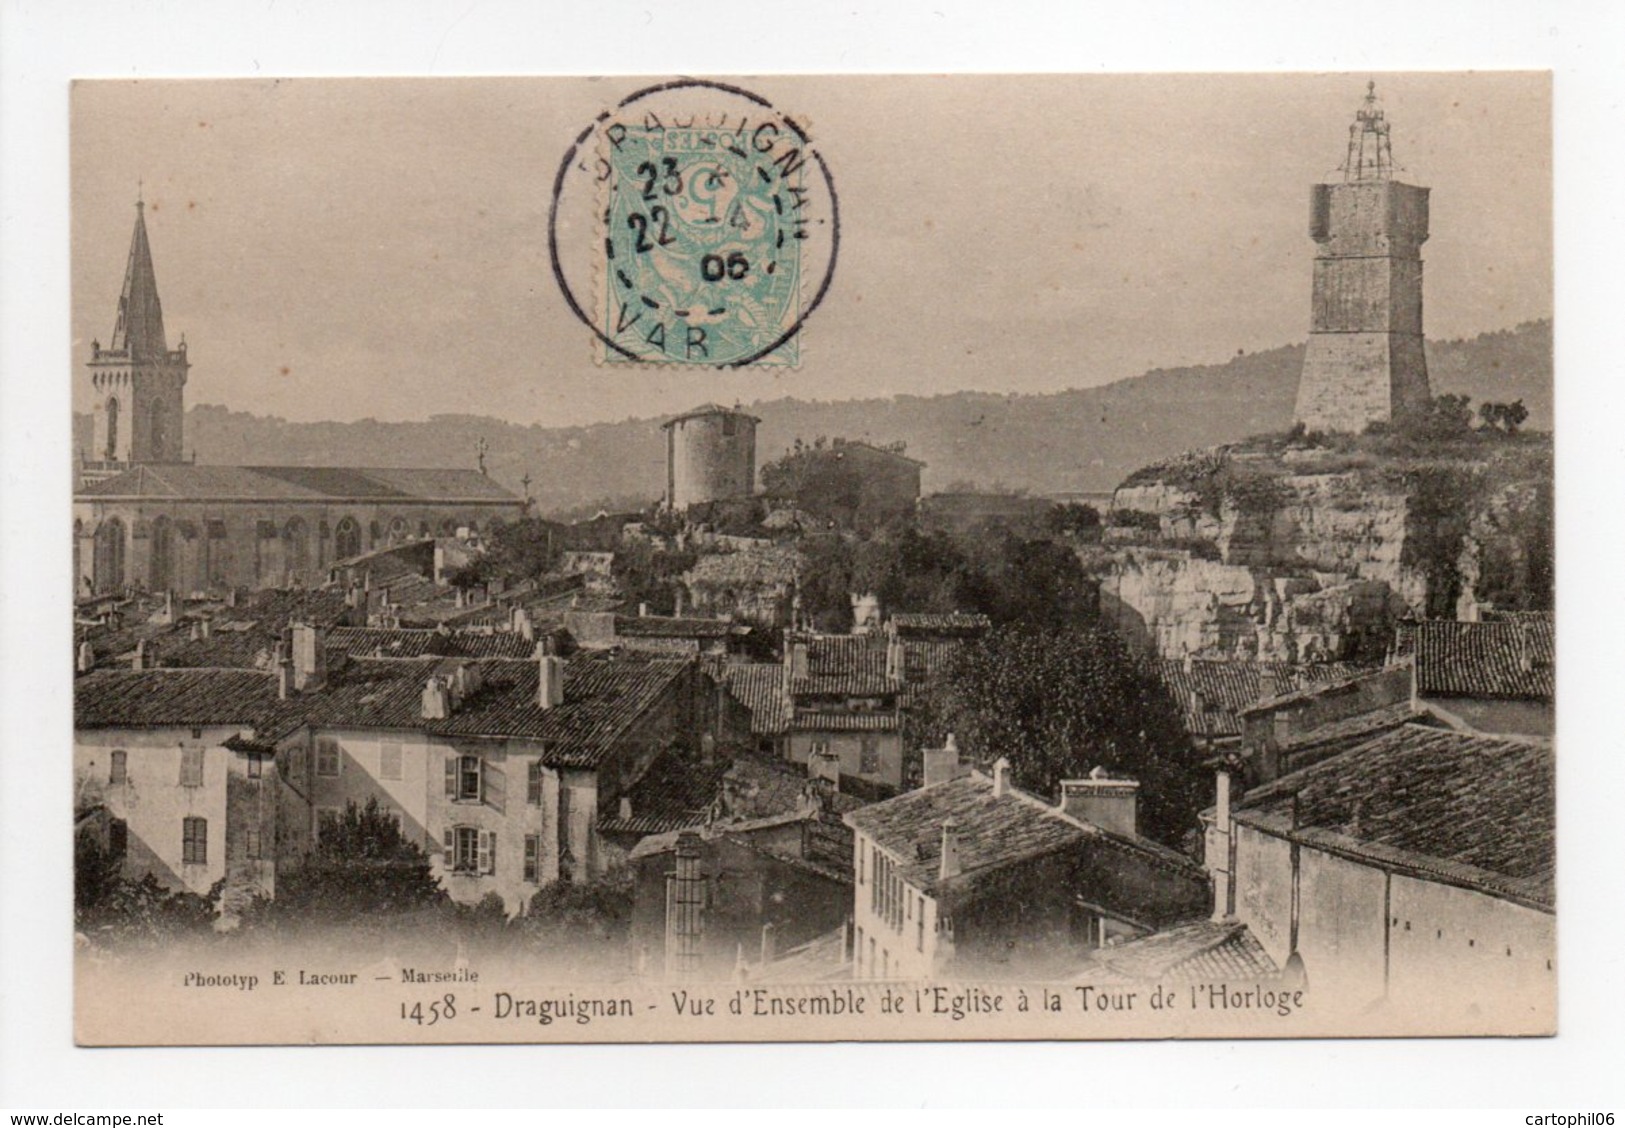 - CPA DRAGUIGNAN (83) - Vue D'Ensemble De L'Eglise à La Tour De L'Horloge 1905 - Photo Lacour 1458 - - Draguignan